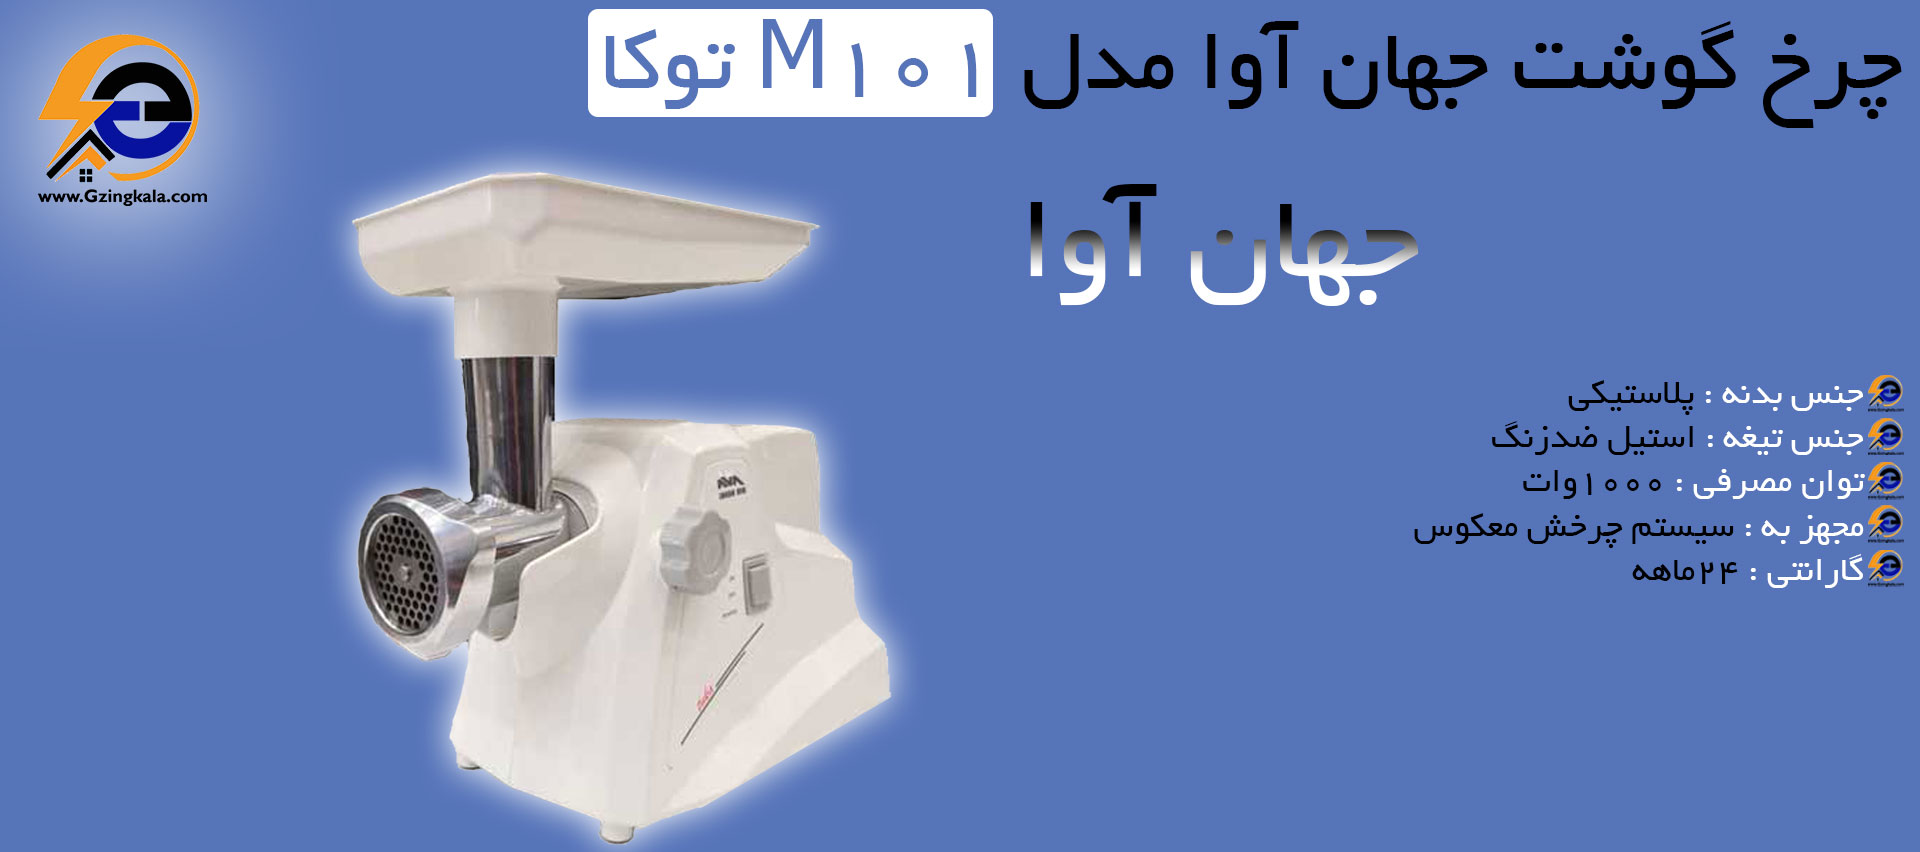 مشخصات چرخ گوشت جهان آوا مدل M101 توکا